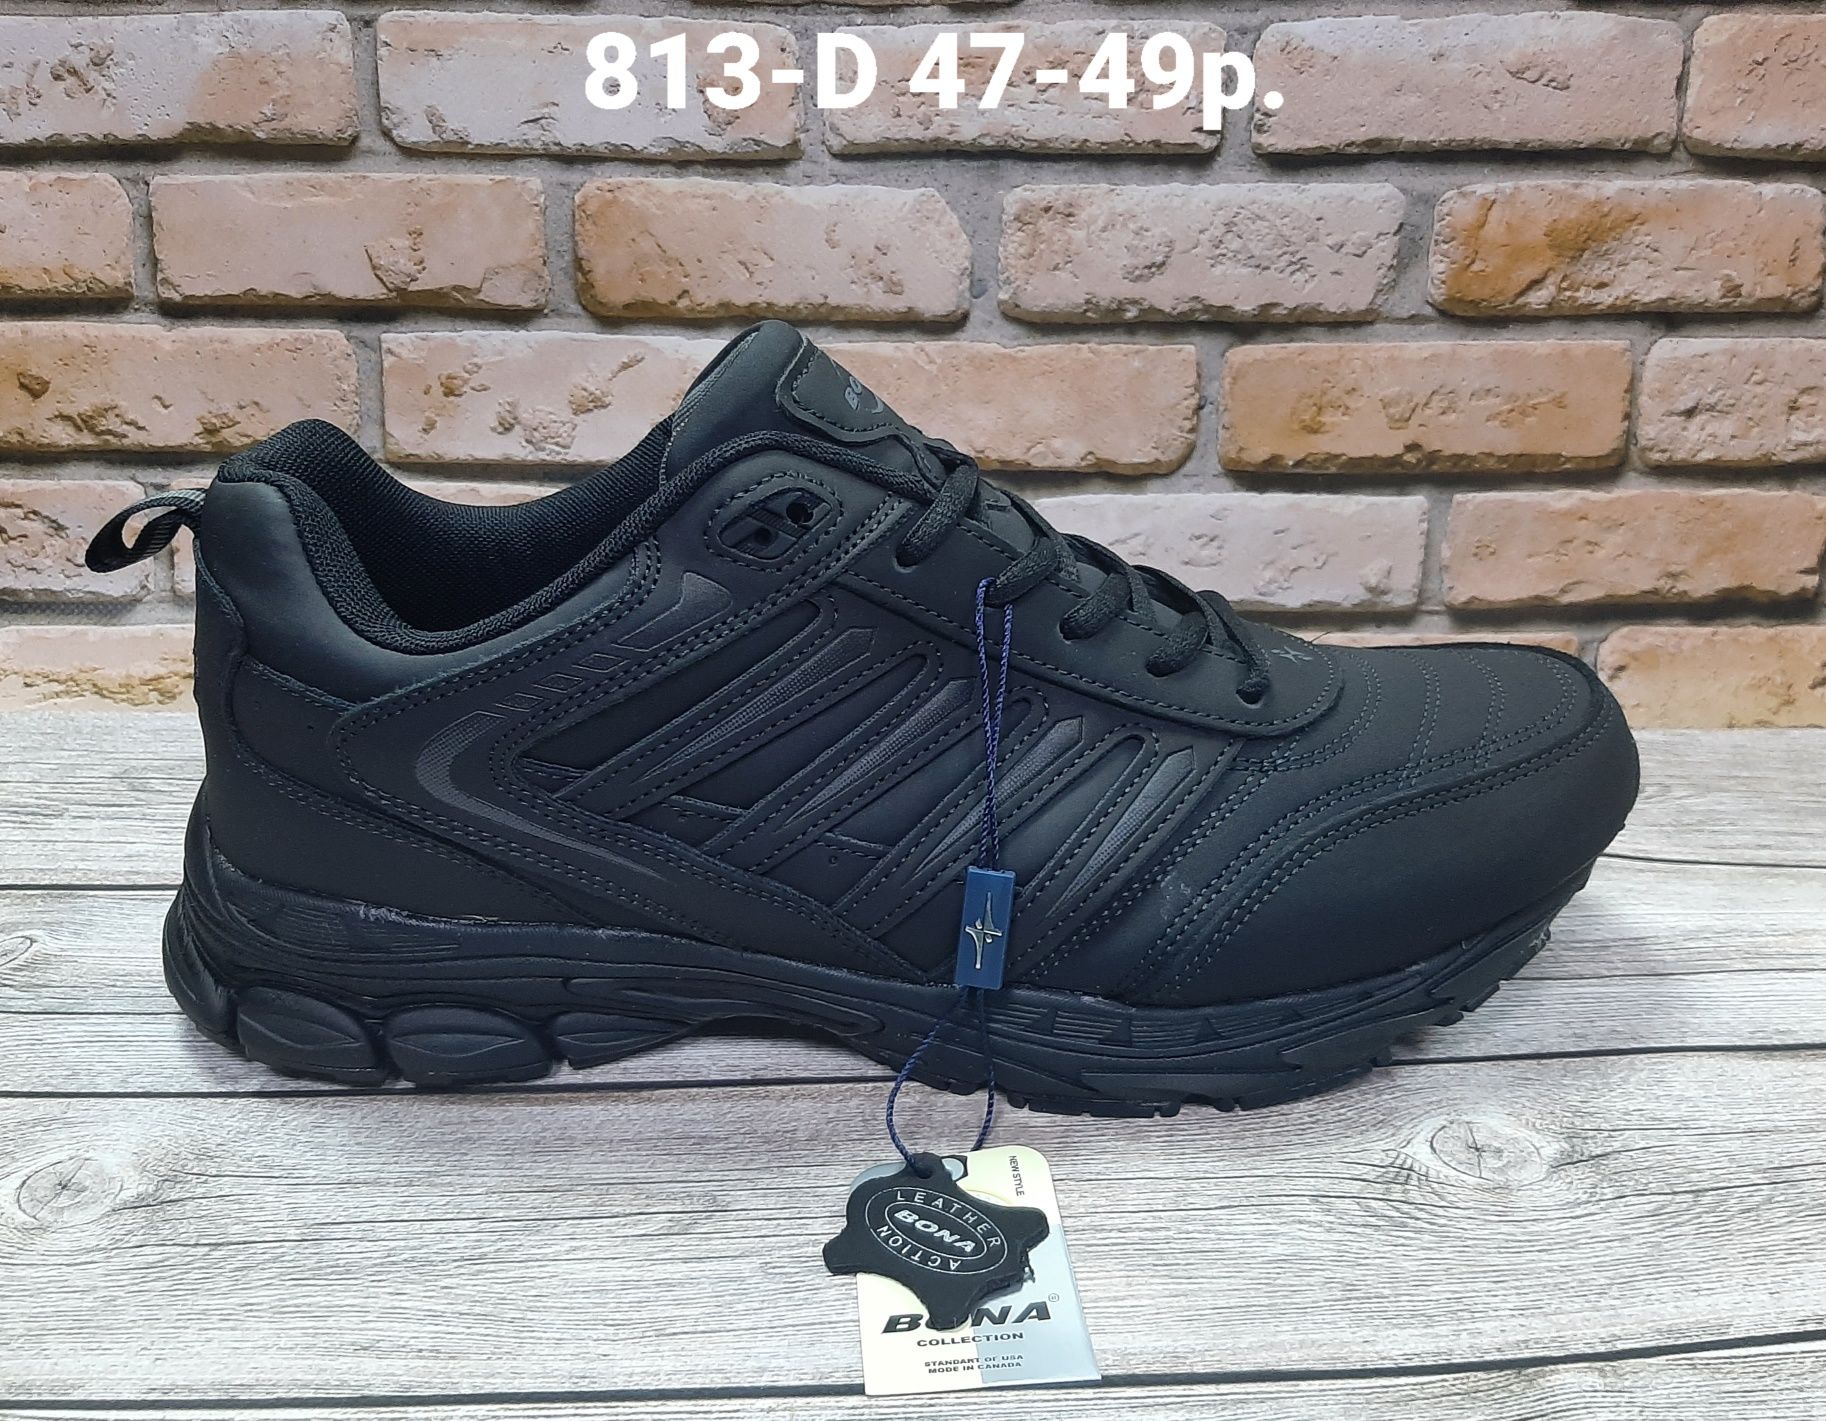 Нубуковые чёрные кроссовки Bona  913D  47-49p